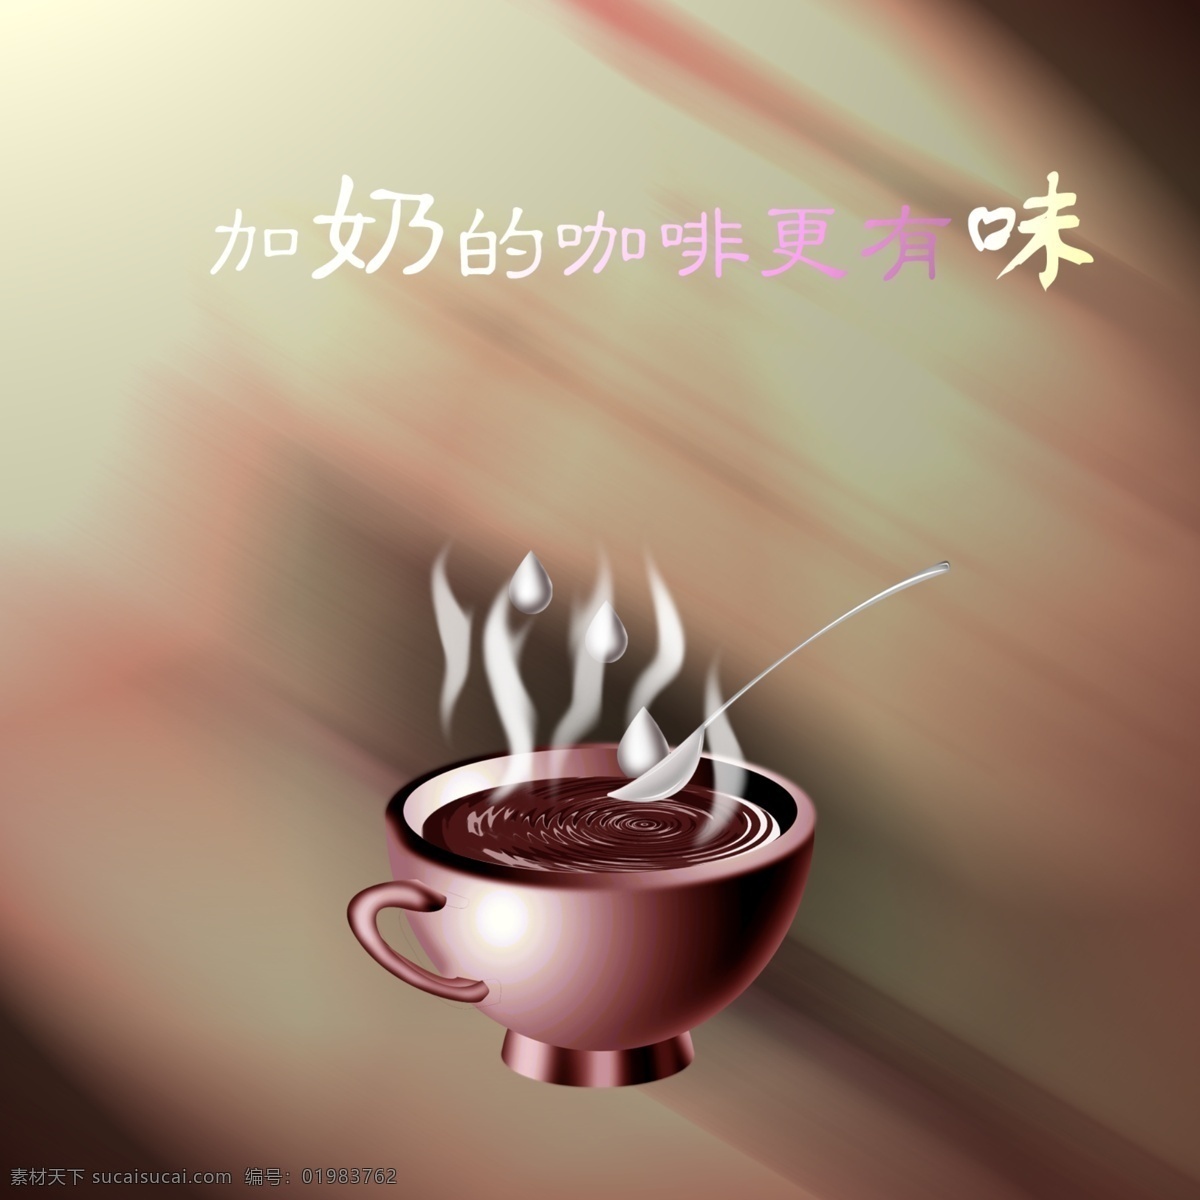 咖啡广告 咖啡广告设计 咖啡 热咖啡 咖啡色 热饮 灰色